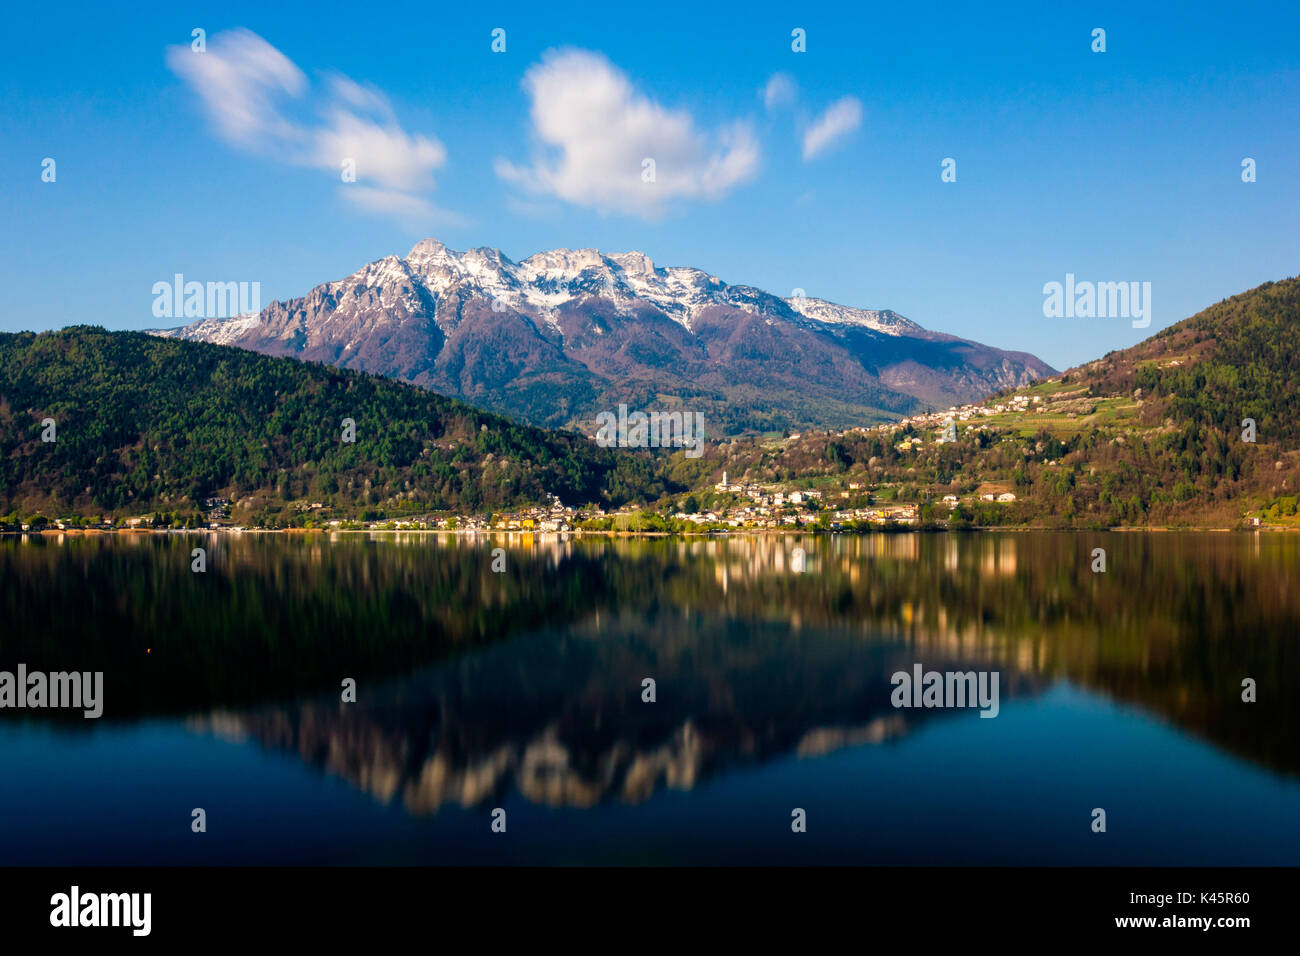 Riflessioni, il lago di Caldonazzo, in provincia di Trento, Trentino Alto Adige, Italia. Piccola città sul bordo delle acque. Foto Stock